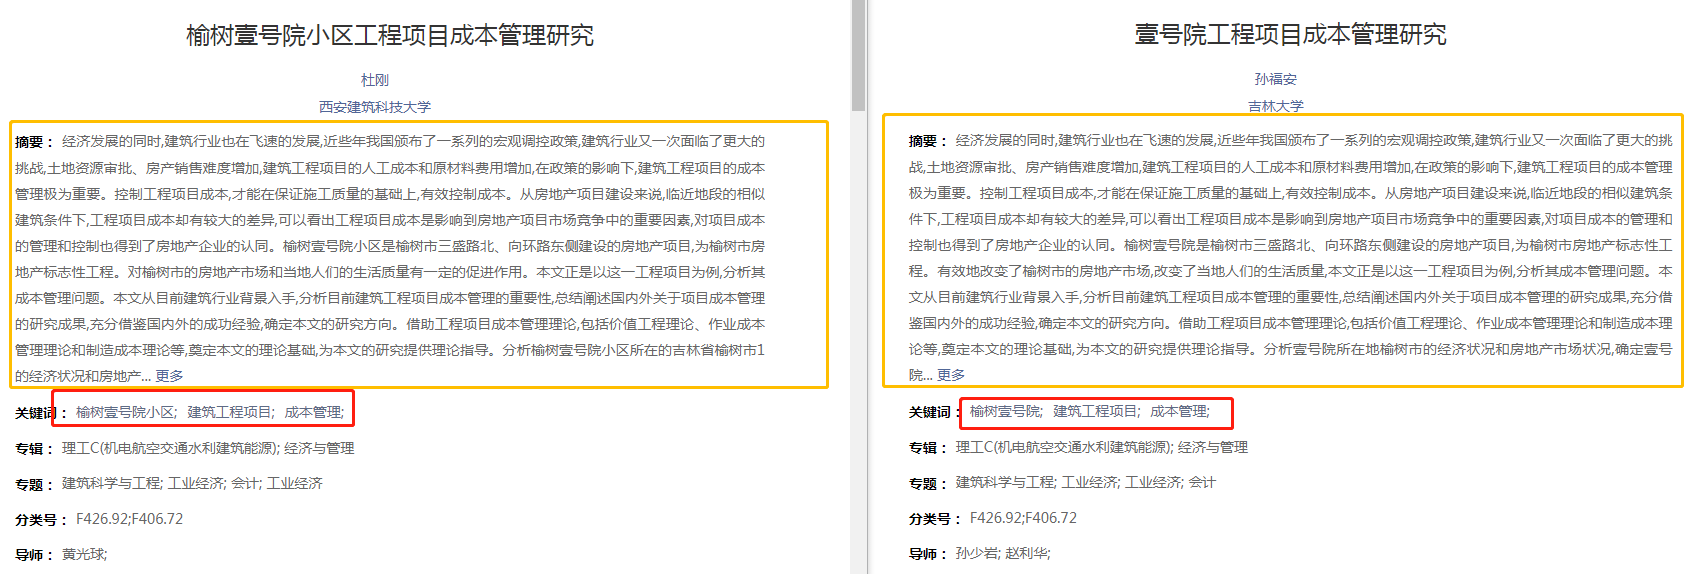 西安建筑科技大学杜刚的论文（左）和吉林大学孙福安的论文（右）在摘要、关键词部分高度雷同。